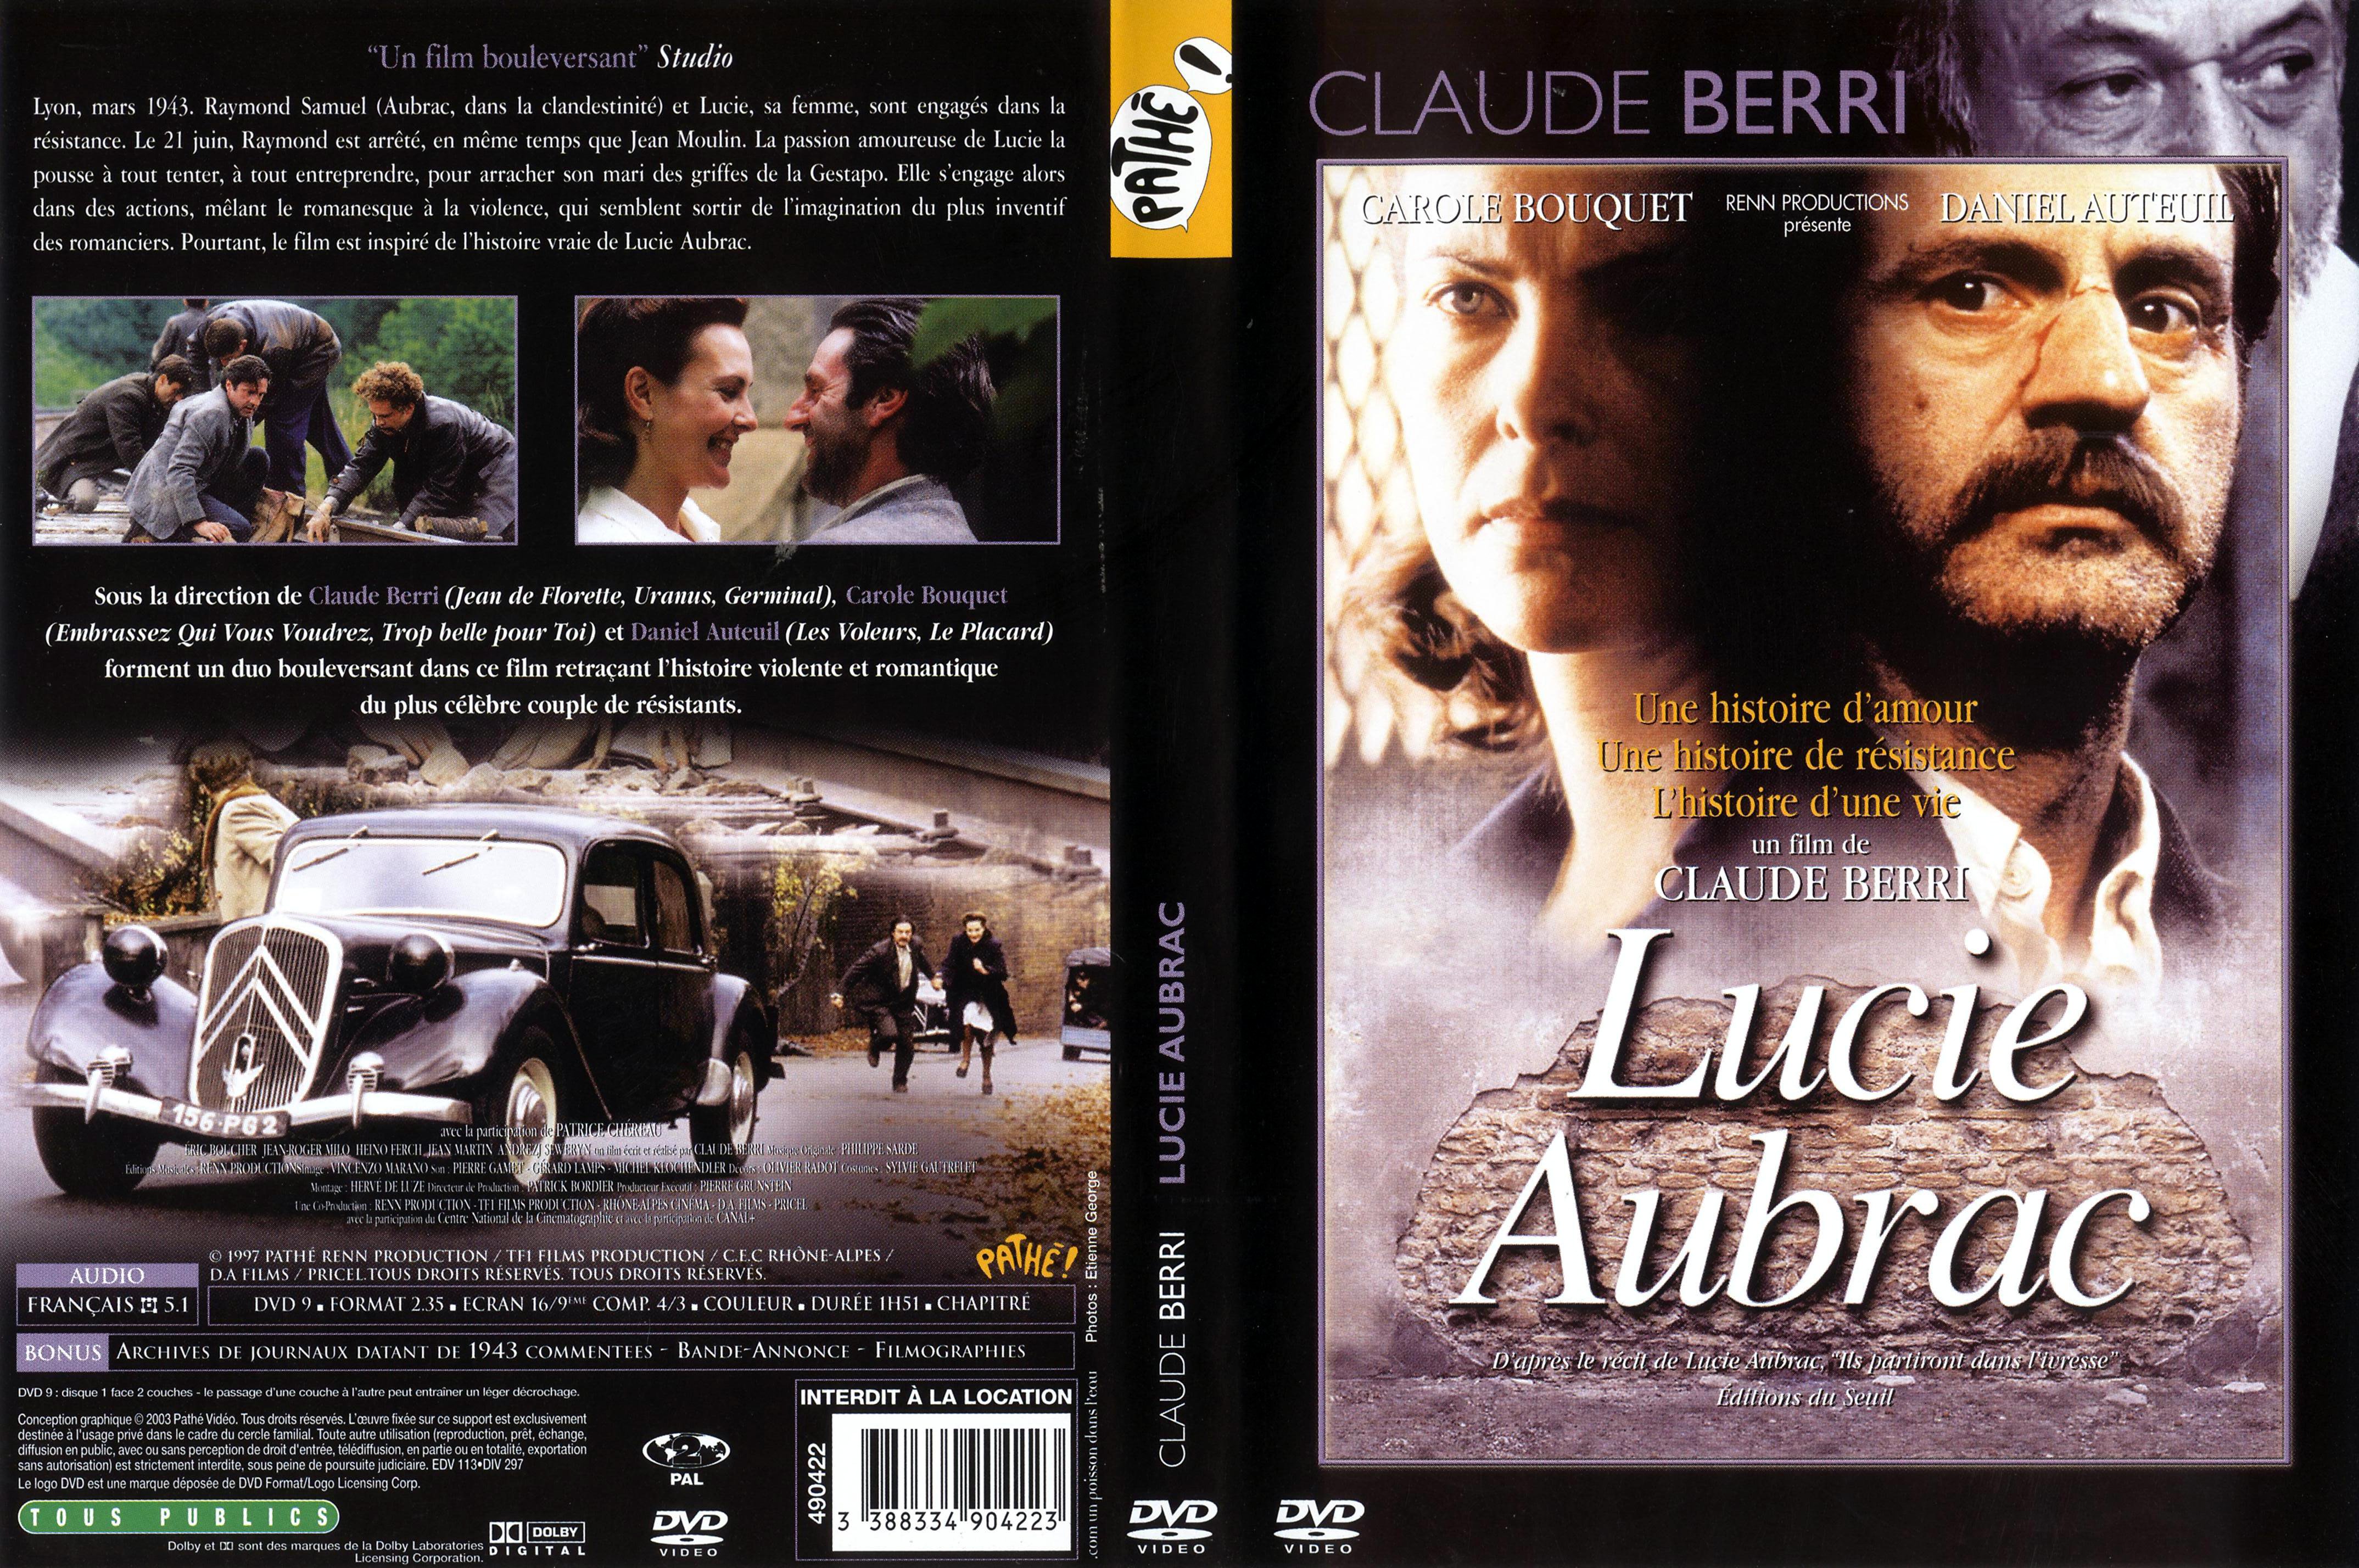 Jaquette DVD Lucie Aubrac